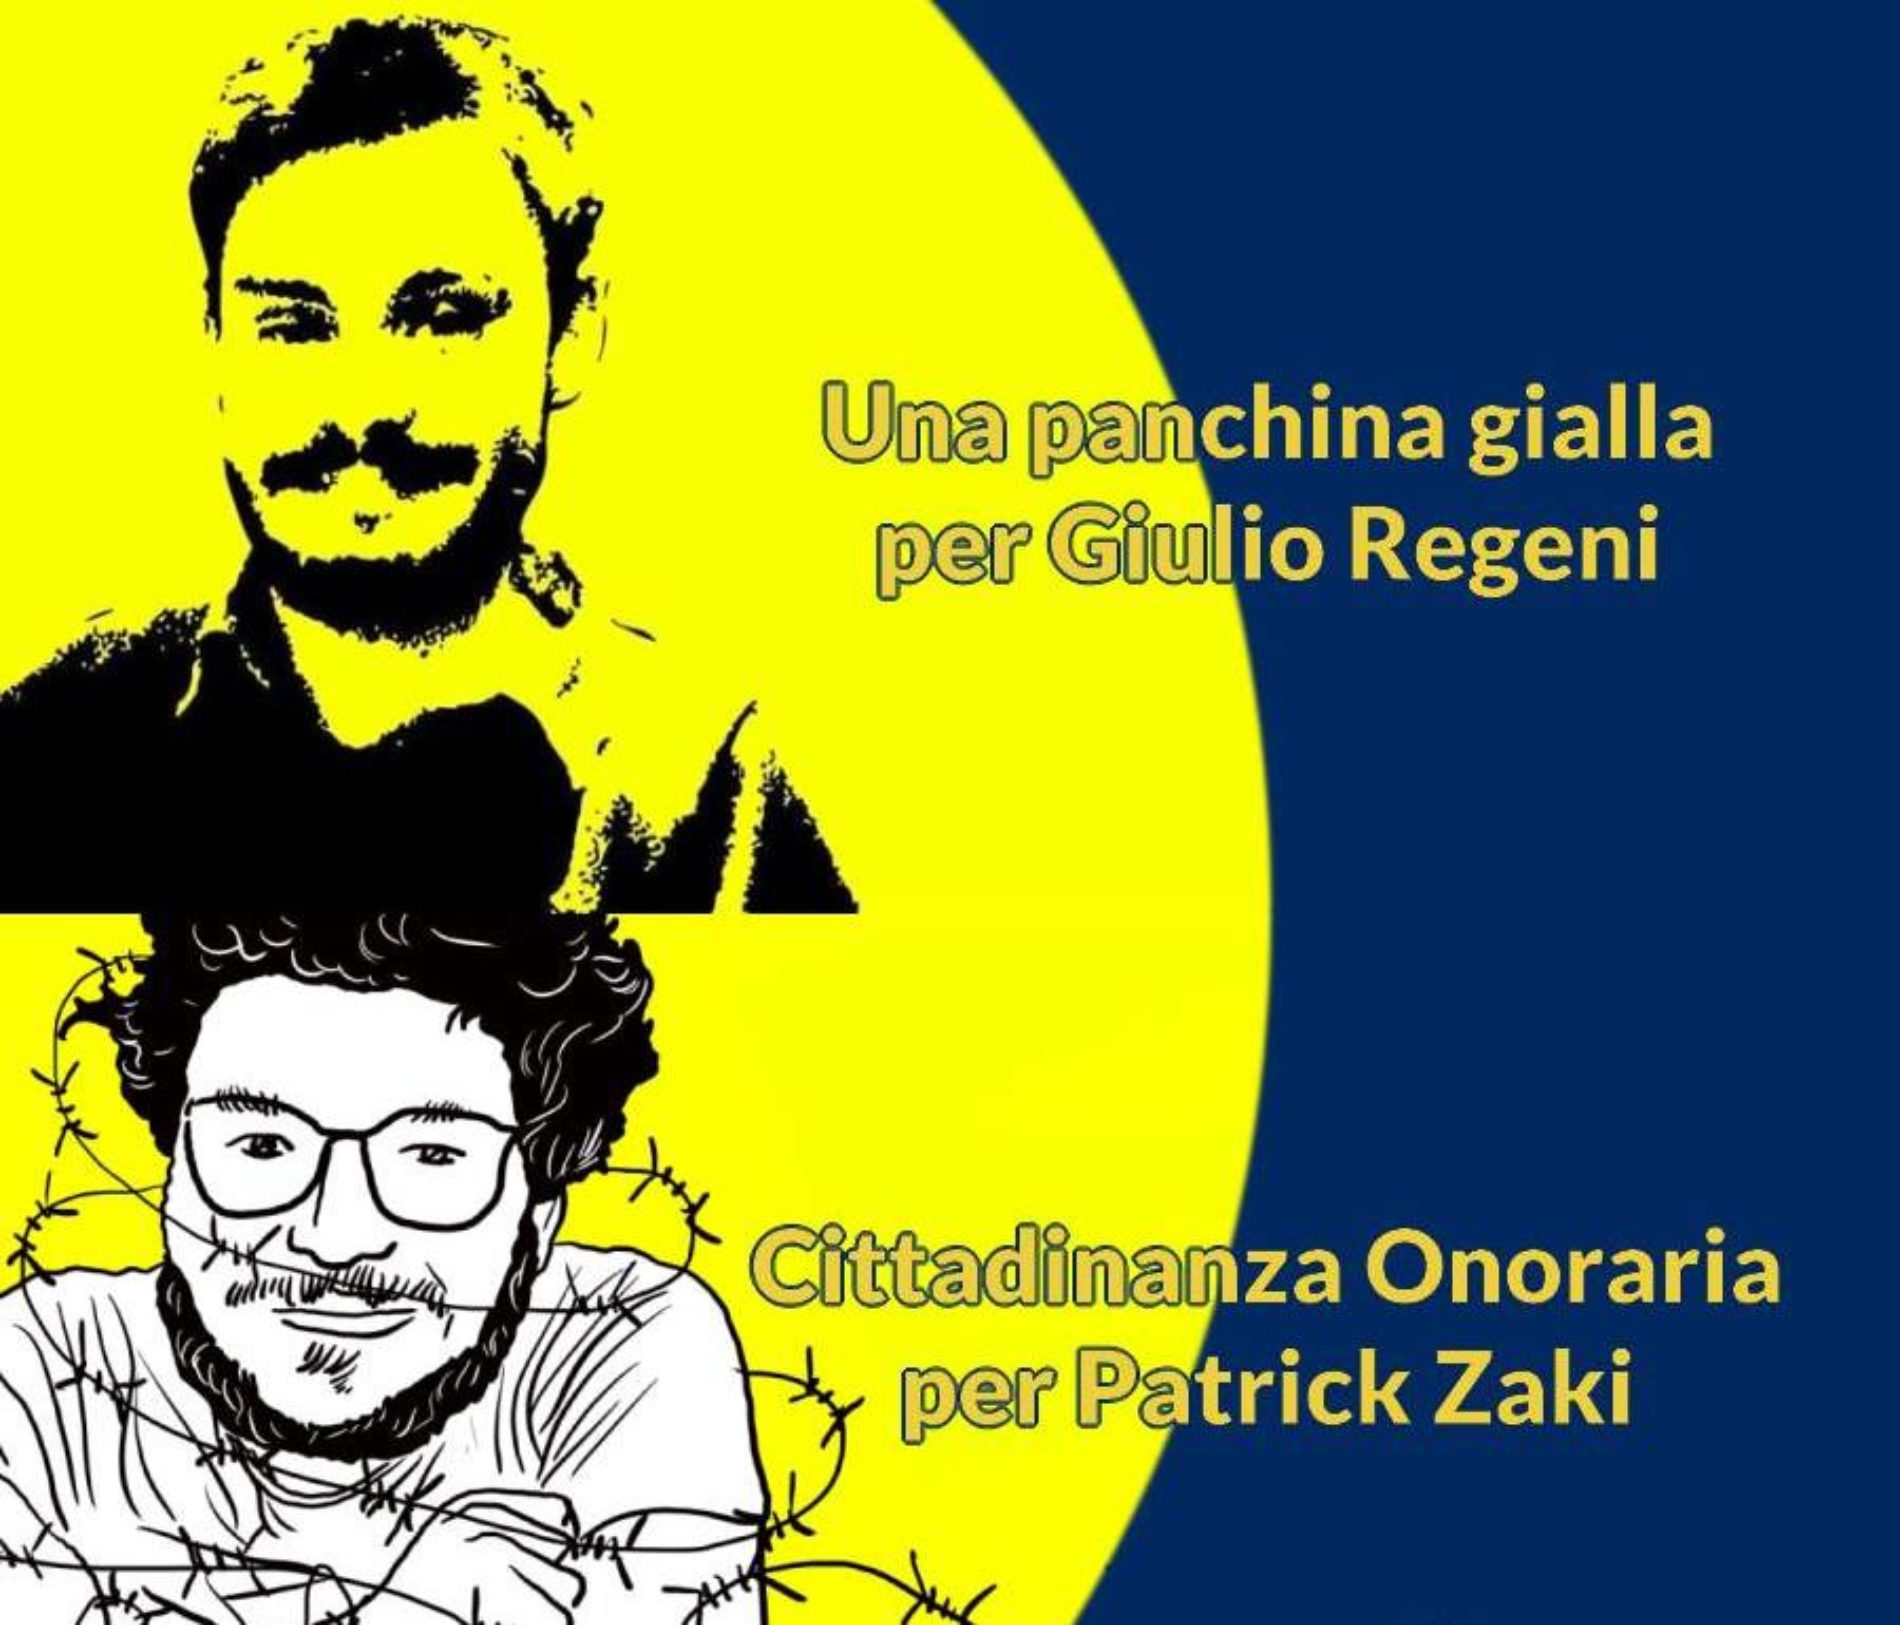 Troina. Solidarieta’ e giustizia per Patrick Zaky e Giulio Regeni